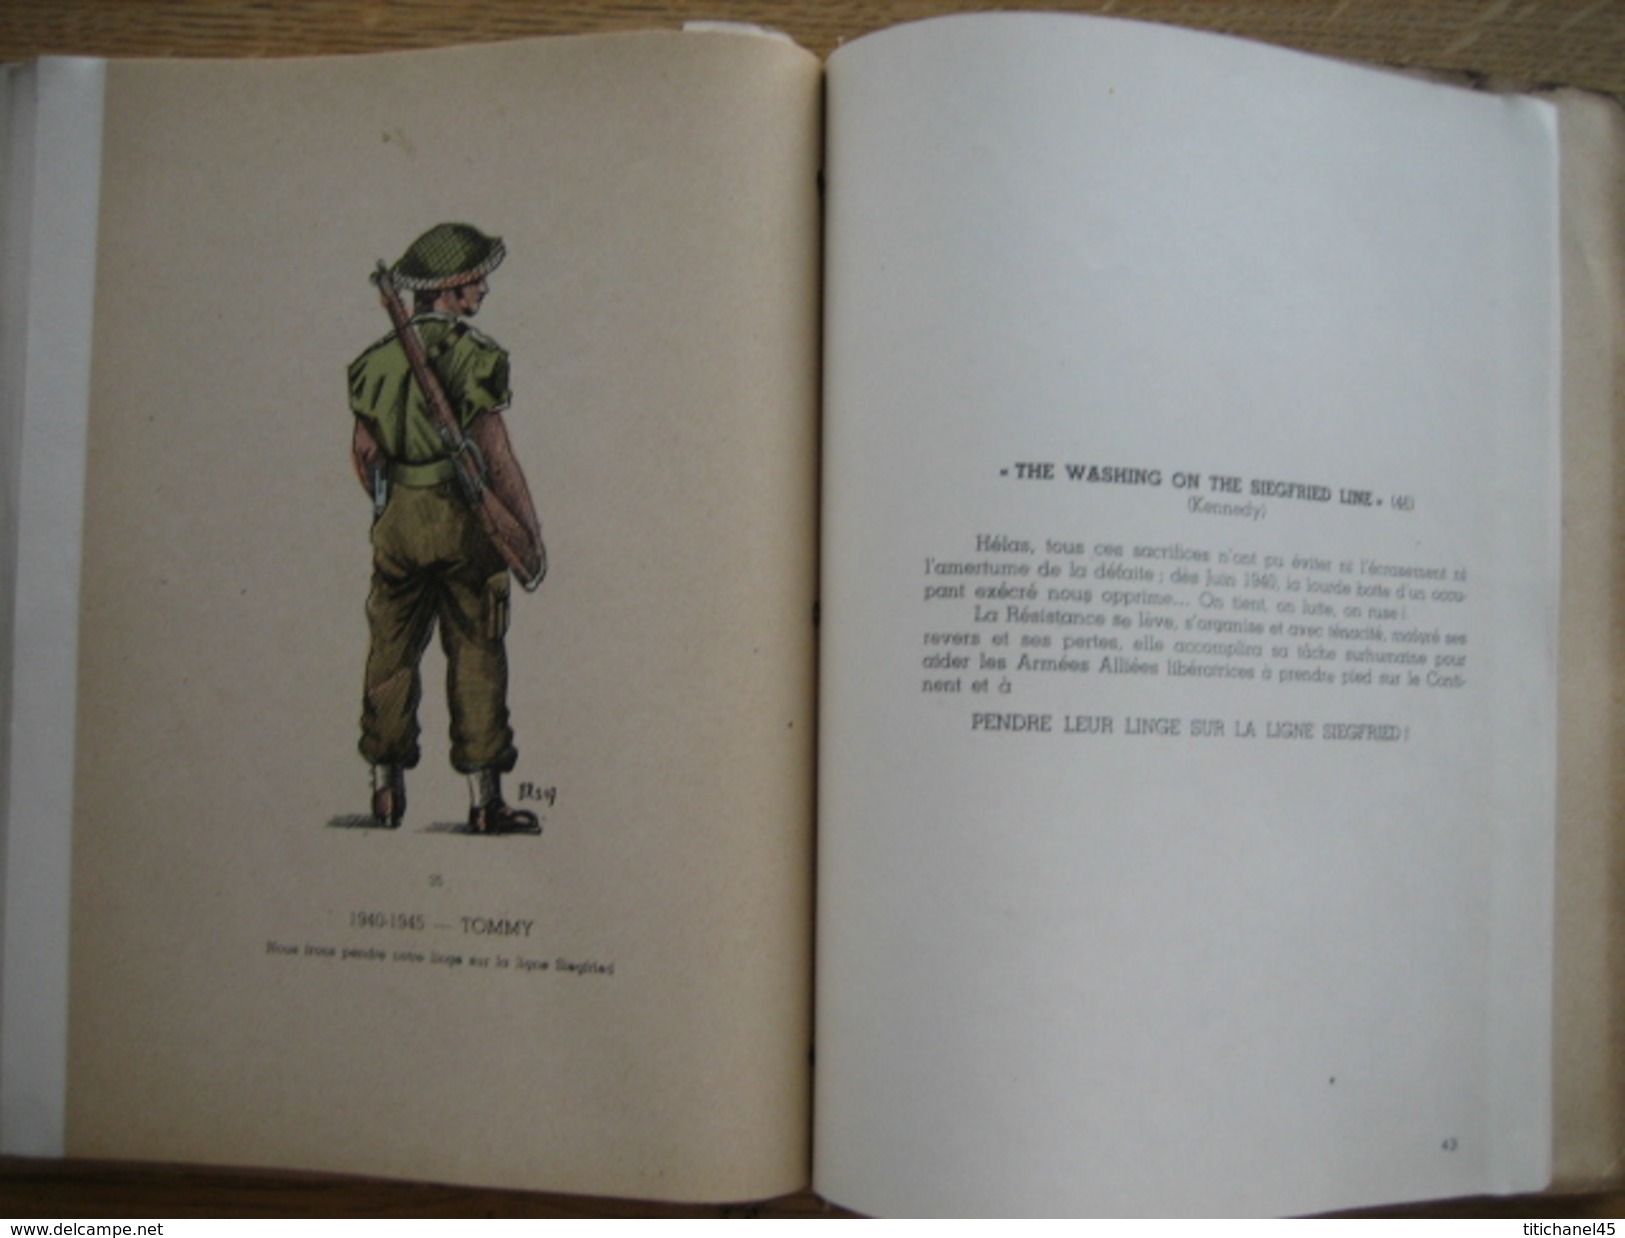 MARCHES MILITAIRES et CHANTS PATRIOTIQUES - 1948 - 55 pages illustrées de 41 planches hors-texte (Dr SERVAIS)